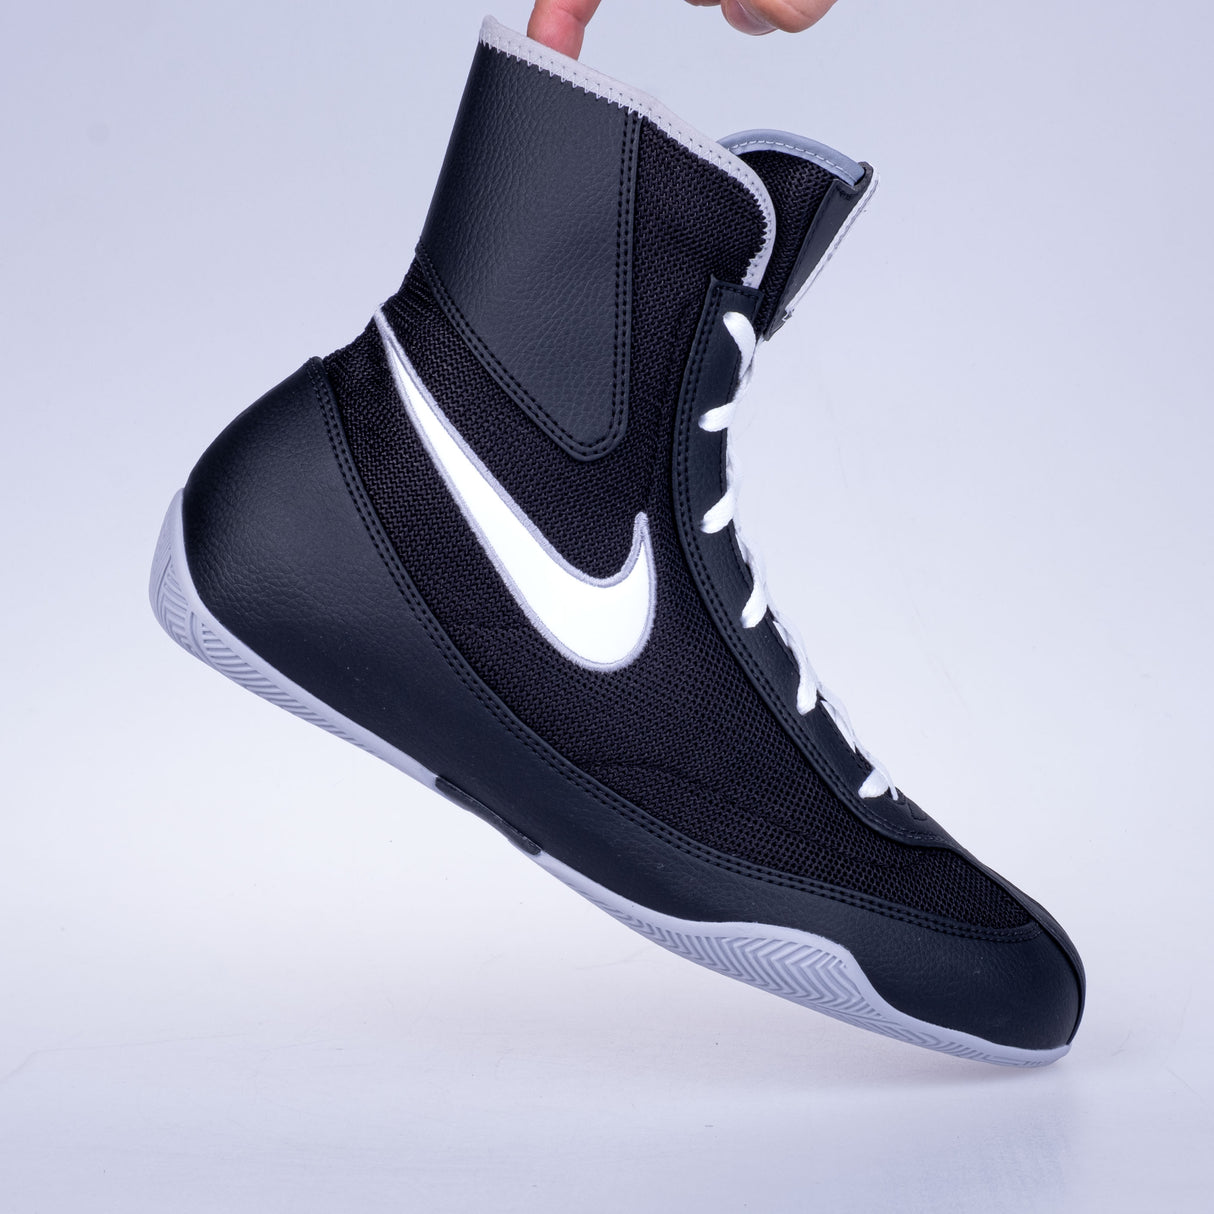 Boxschuhe Nike Machomai 2 - schwarz, 321819003